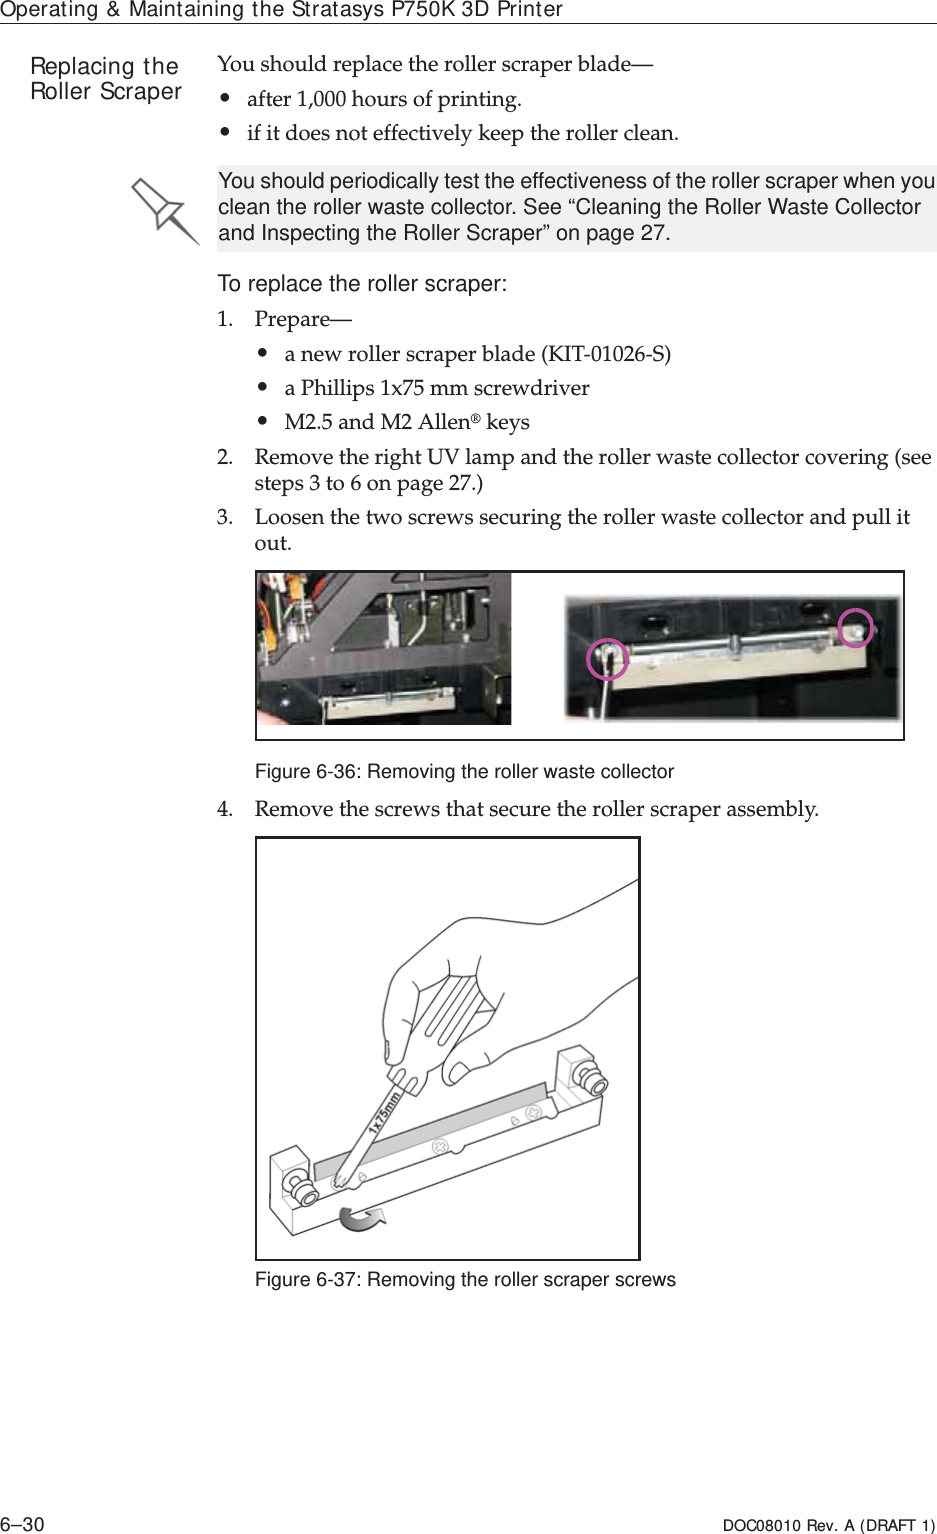 Operating &amp; Maintaining the Stratasys P750K 3D Printer6–30 DOC08010 Rev. A (DRAFT 1)Replacing the Roller Scraper Youȱshouldȱreplaceȱtheȱrollerȱscraperȱblade—•afterȱ1,000ȱhoursȱofȱprinting.•ifȱitȱdoesȱnotȱeffectivelyȱkeepȱtheȱrollerȱclean.To replace the roller scraper:1. Prepare—•aȱnewȱrollerȱscraperȱbladeȱ(KITȬ01026ȬS)•aȱPhillipsȱ1x75ȱmmȱscrewdriver•M2.5ȱandȱM2ȱAllen®ȱkeys2. RemoveȱtheȱrightȱUVȱlampȱandȱtheȱrollerȱwasteȱcollectorȱcoveringȱ(seeȱstepsȱ3ȱtoȱ6ȱonȱpage 27.)3. Loosenȱtheȱtwoȱscrewsȱsecuringȱtheȱrollerȱwasteȱcollectorȱandȱpullȱitȱout.Figure 6-36: Removing the roller waste collector4. Removeȱtheȱscrewsȱthatȱsecureȱtheȱrollerȱscraperȱassembly.ȱFigure 6-37: Removing the roller scraper screwsYou should periodically test the effectiveness of the roller scraper when you clean the roller waste collector. See “Cleaning the Roller Waste Collector and Inspecting the Roller Scraper” on page 27.